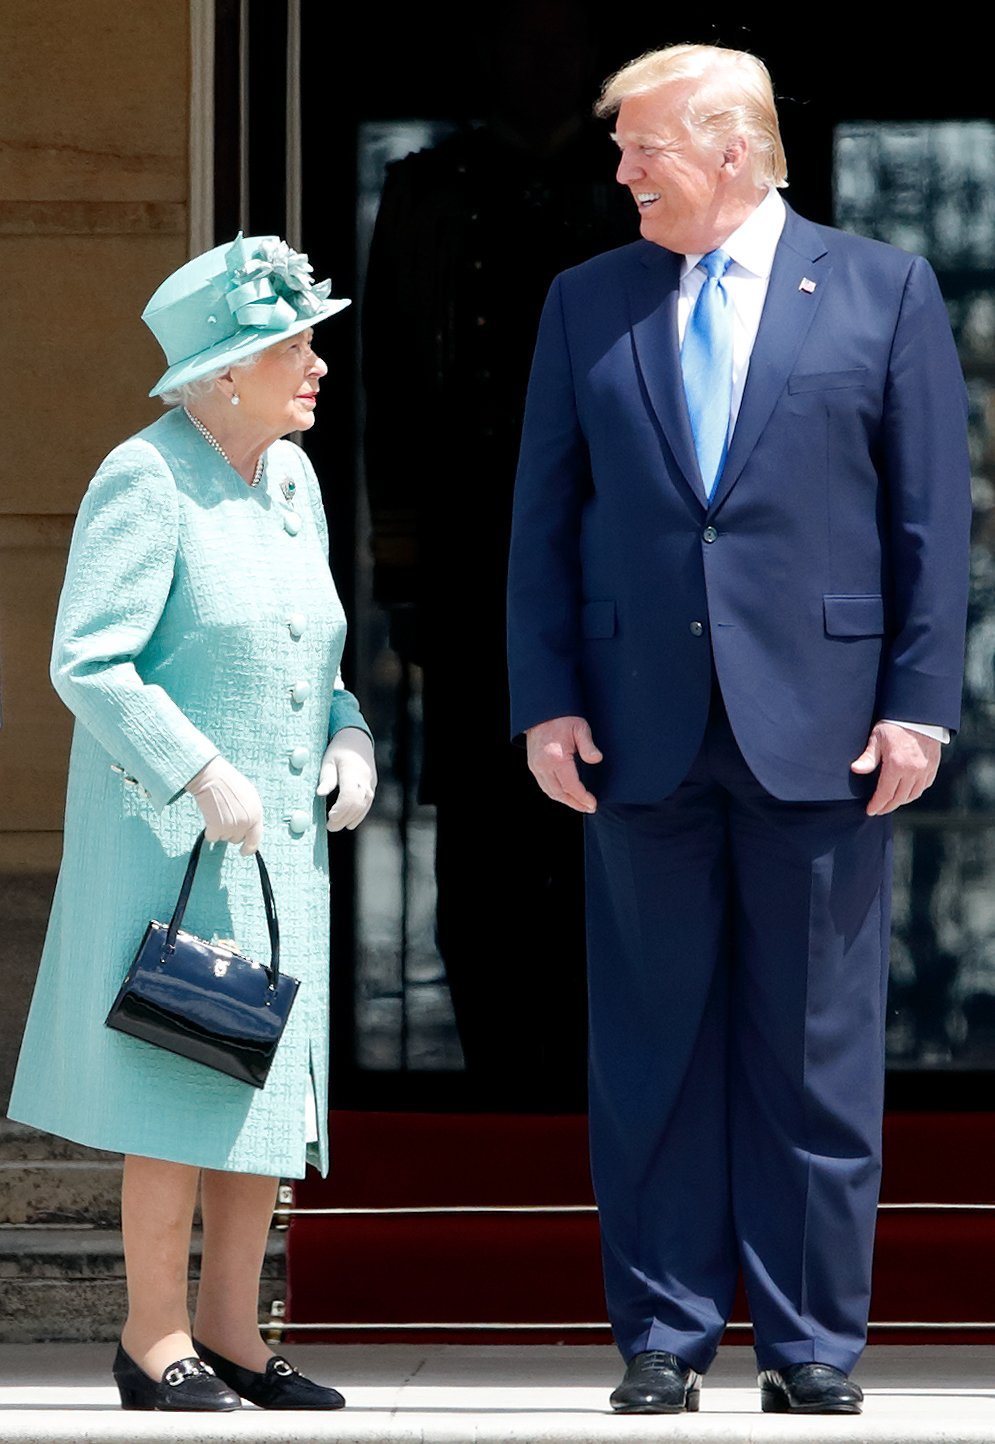 La reina Elizabeth y el presidente de los Estados Unidos, Donald Trump, durante su visita de estado al Reino Unido el 3 de junio de 2019 en Londres, Inglaterra. | Fuente: Getty Images